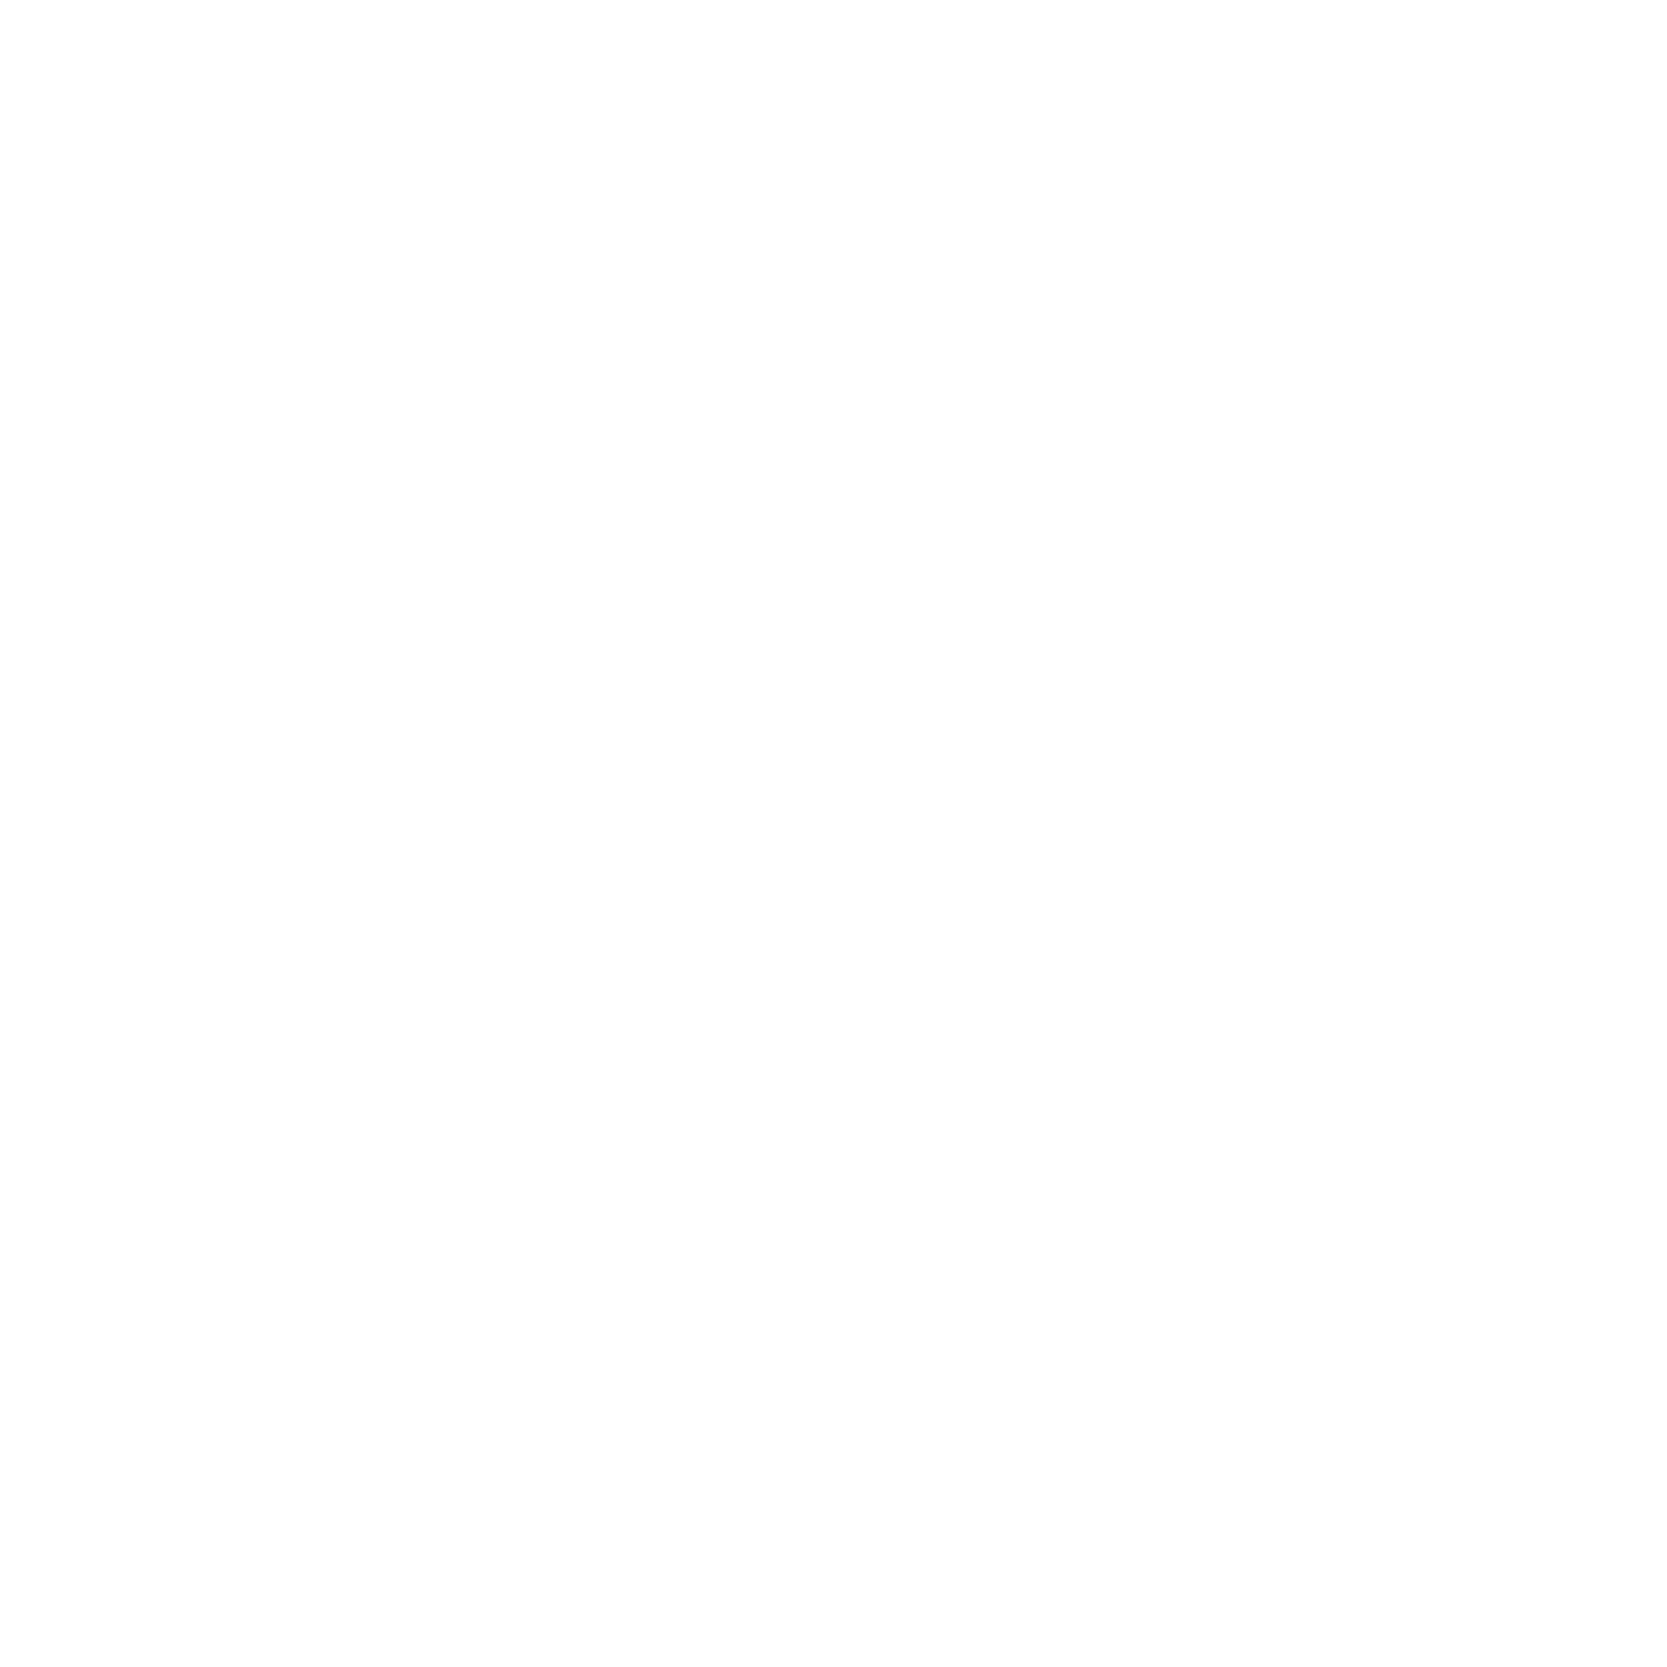 MK CONSTRUCTUM